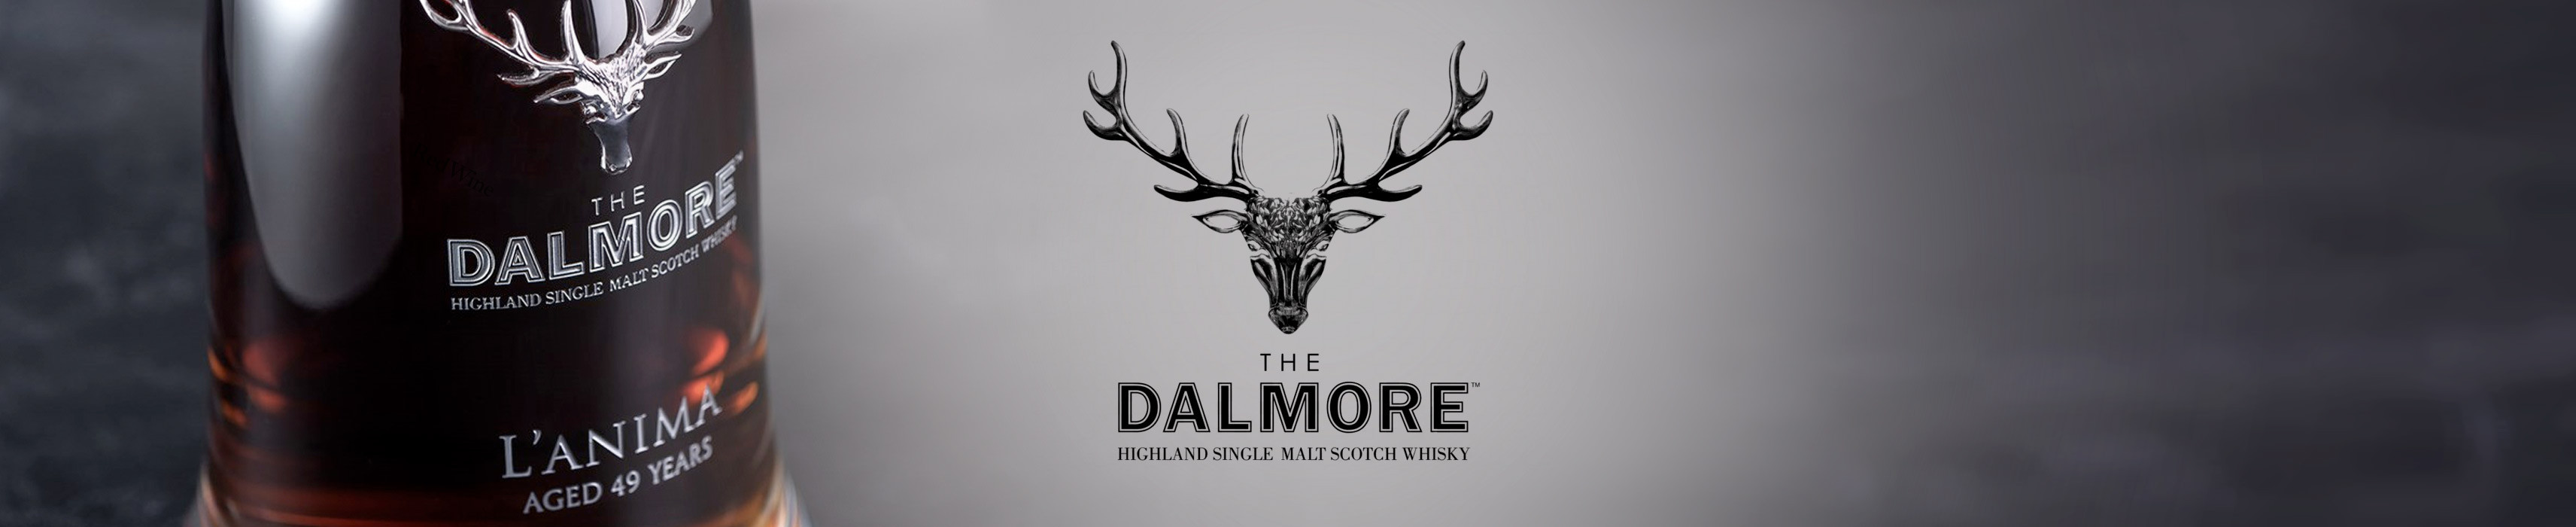 The Dalmore Distillery